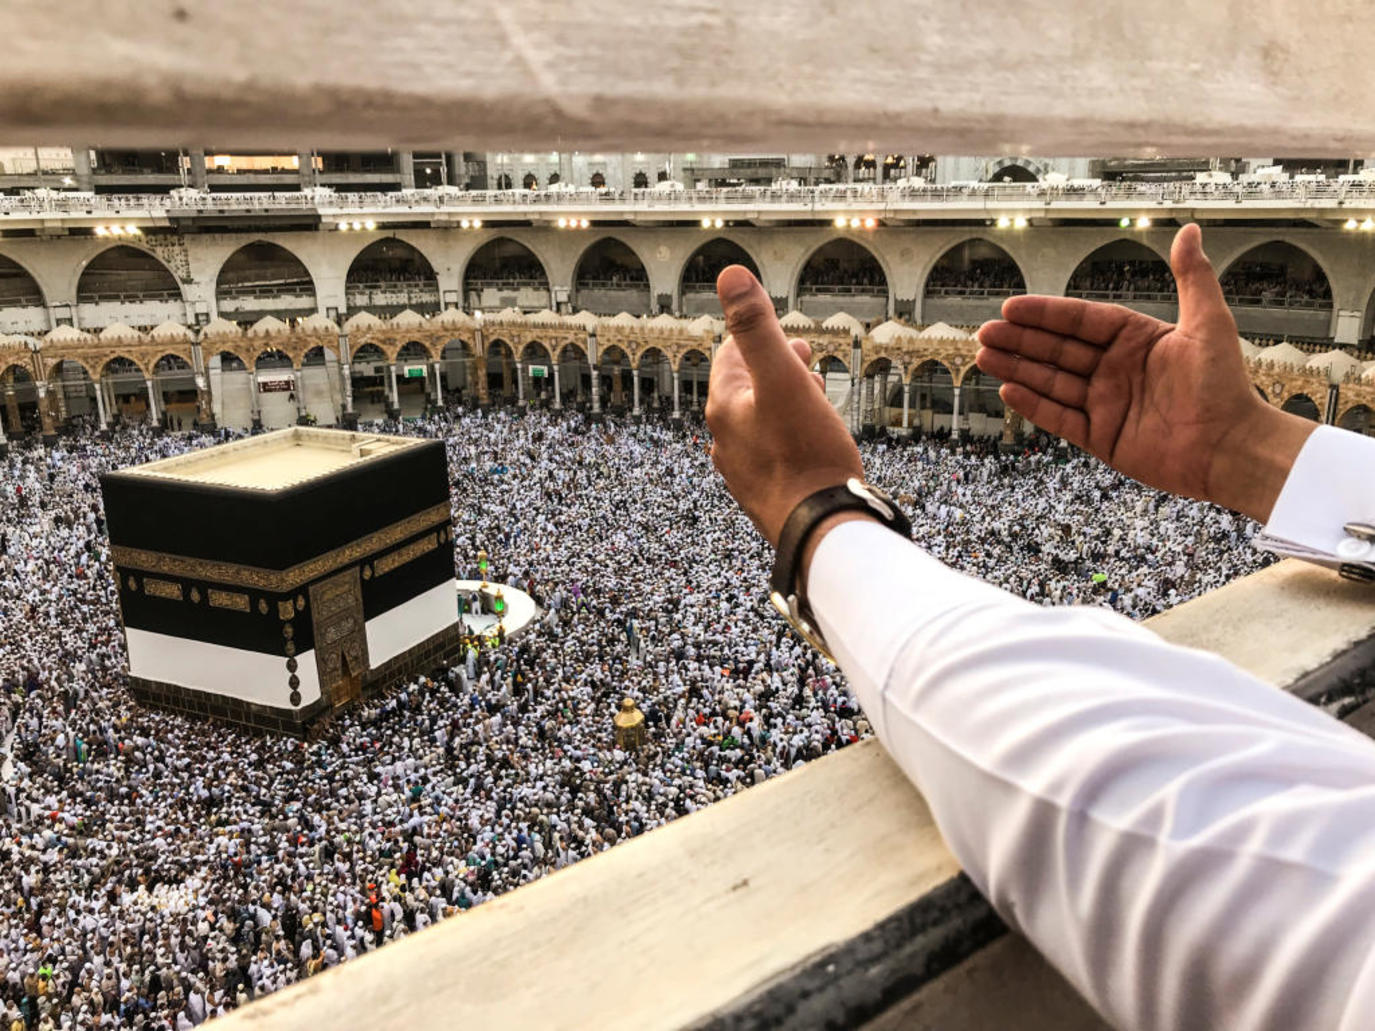 السعودية تزف خبرا سارا للمسلمين وترفع عدد الحجاج إلى مليون